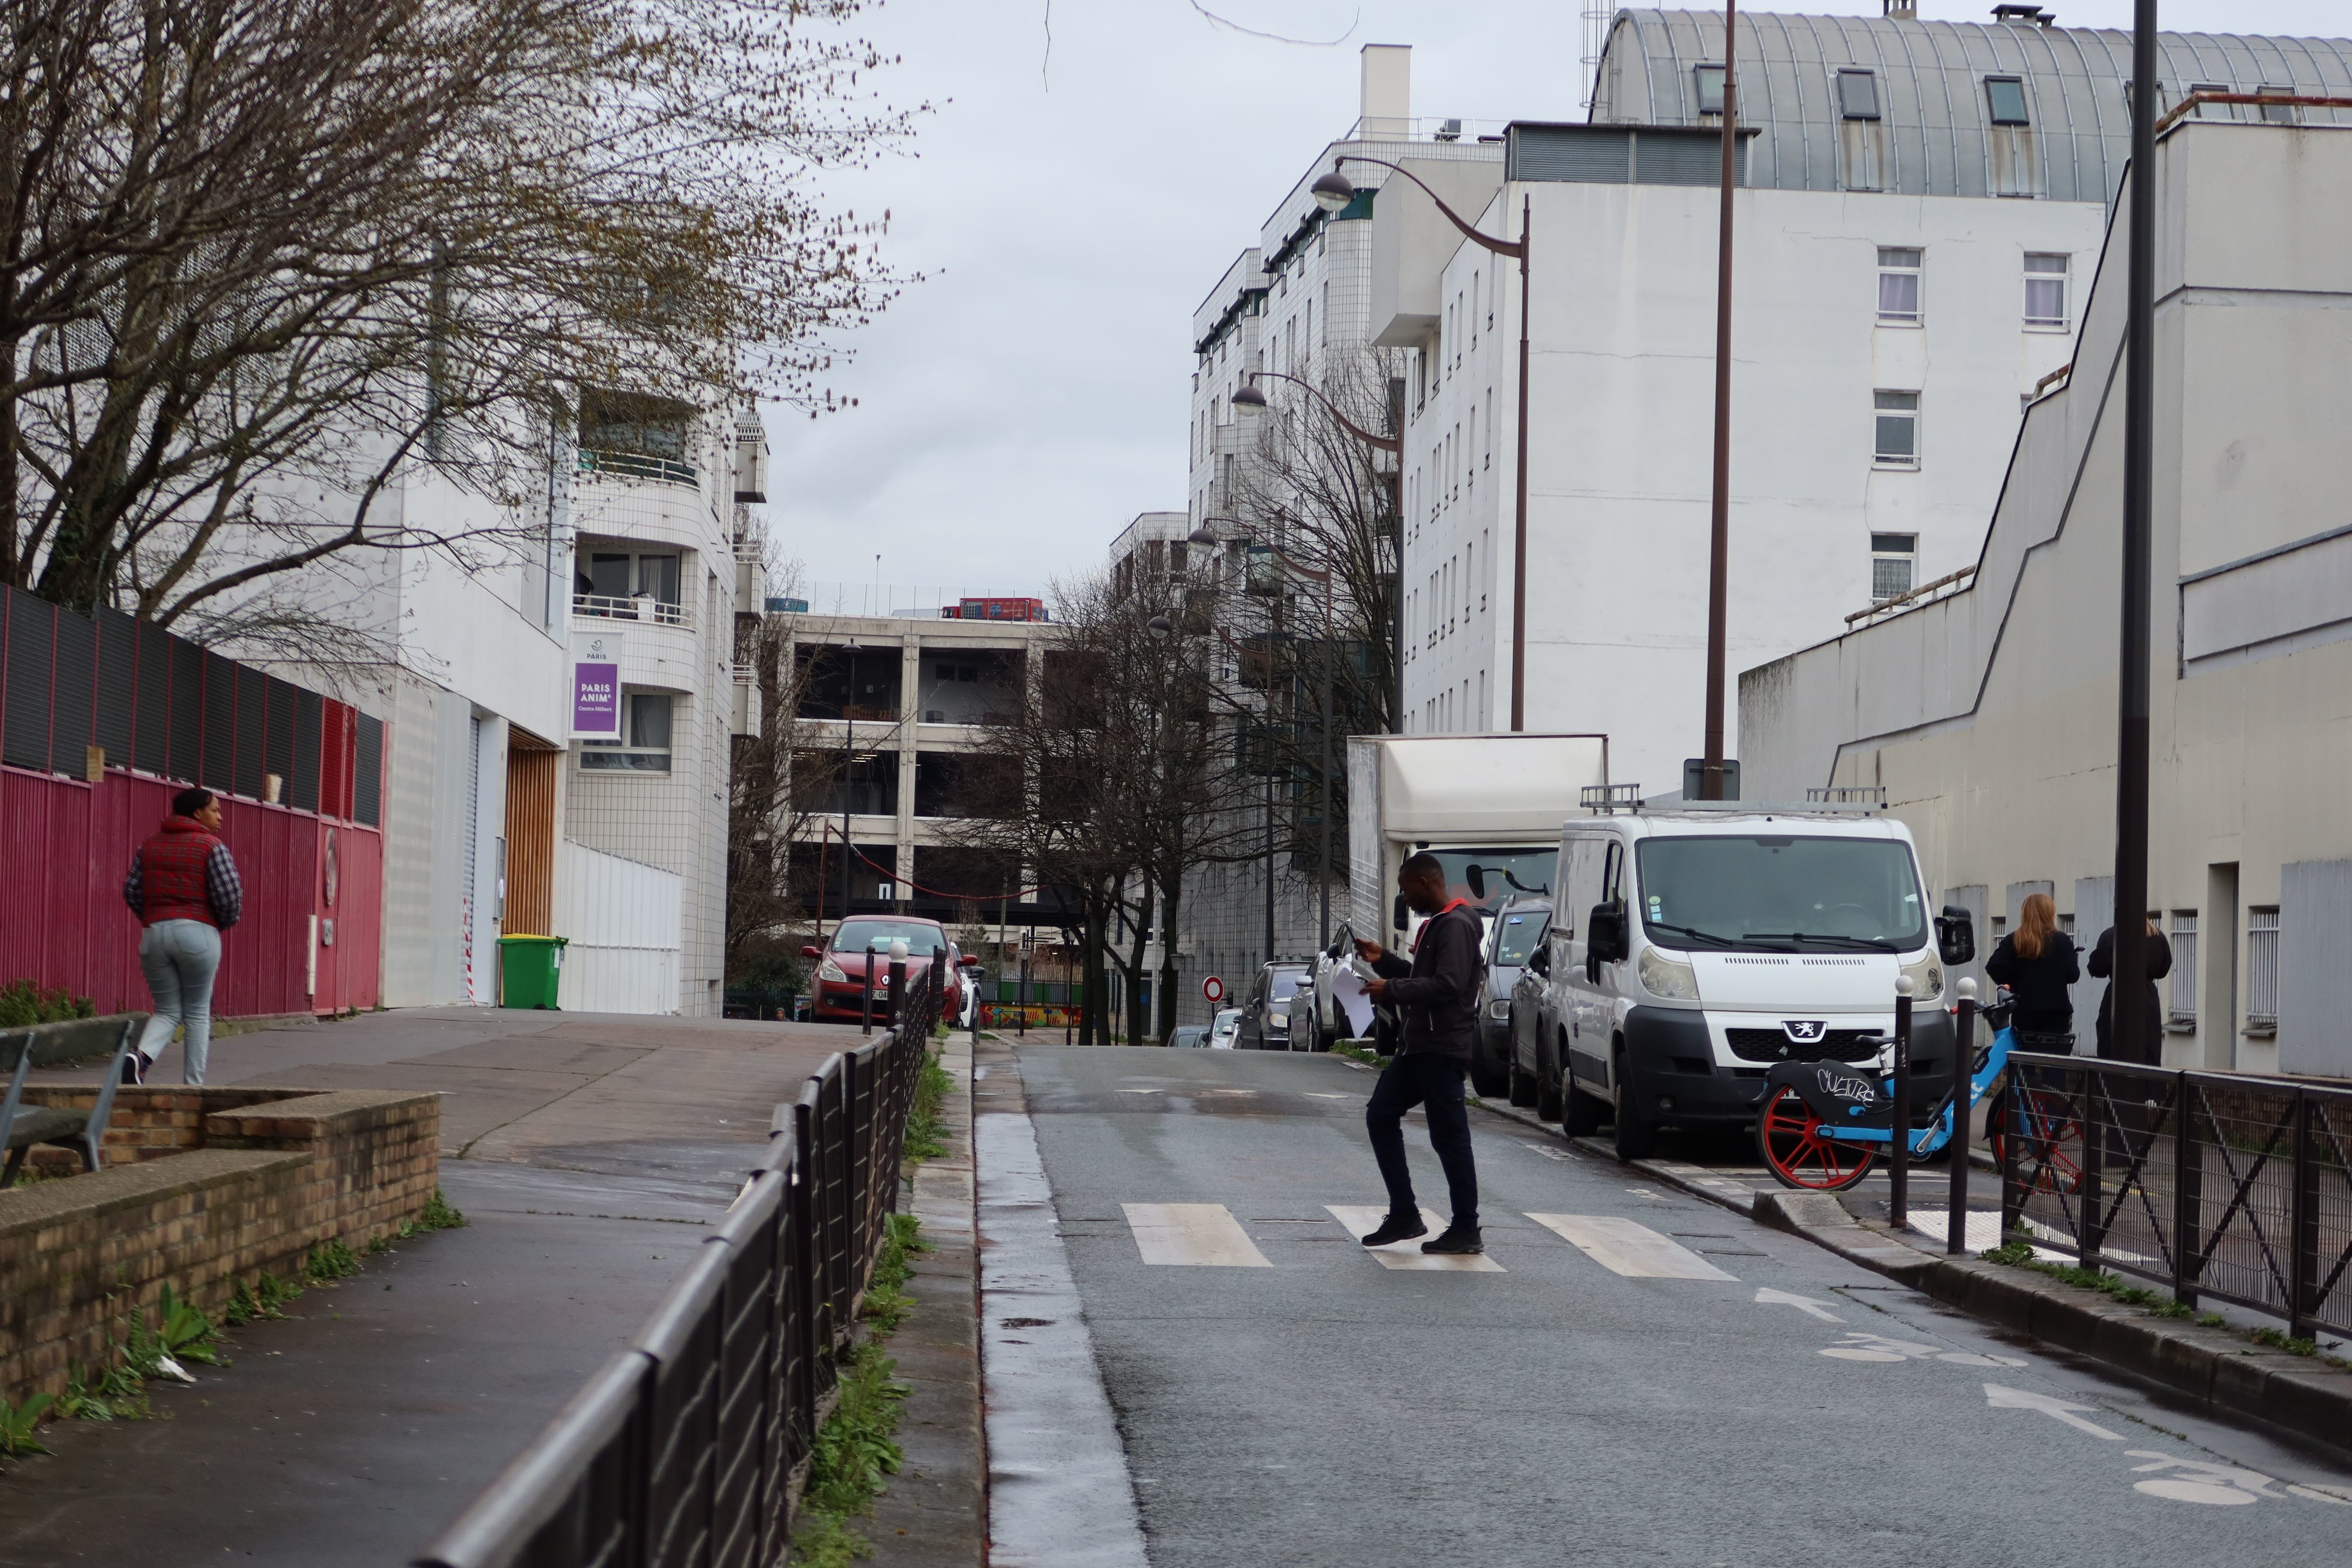 Paris (XVIIIe), rue Tchaïkovski, le 13 mars. C'est au niveau du passage piéton que la victime s'est effondrée après avoir été poignardé à l'abdomen. LP/Benjamin Derveaux